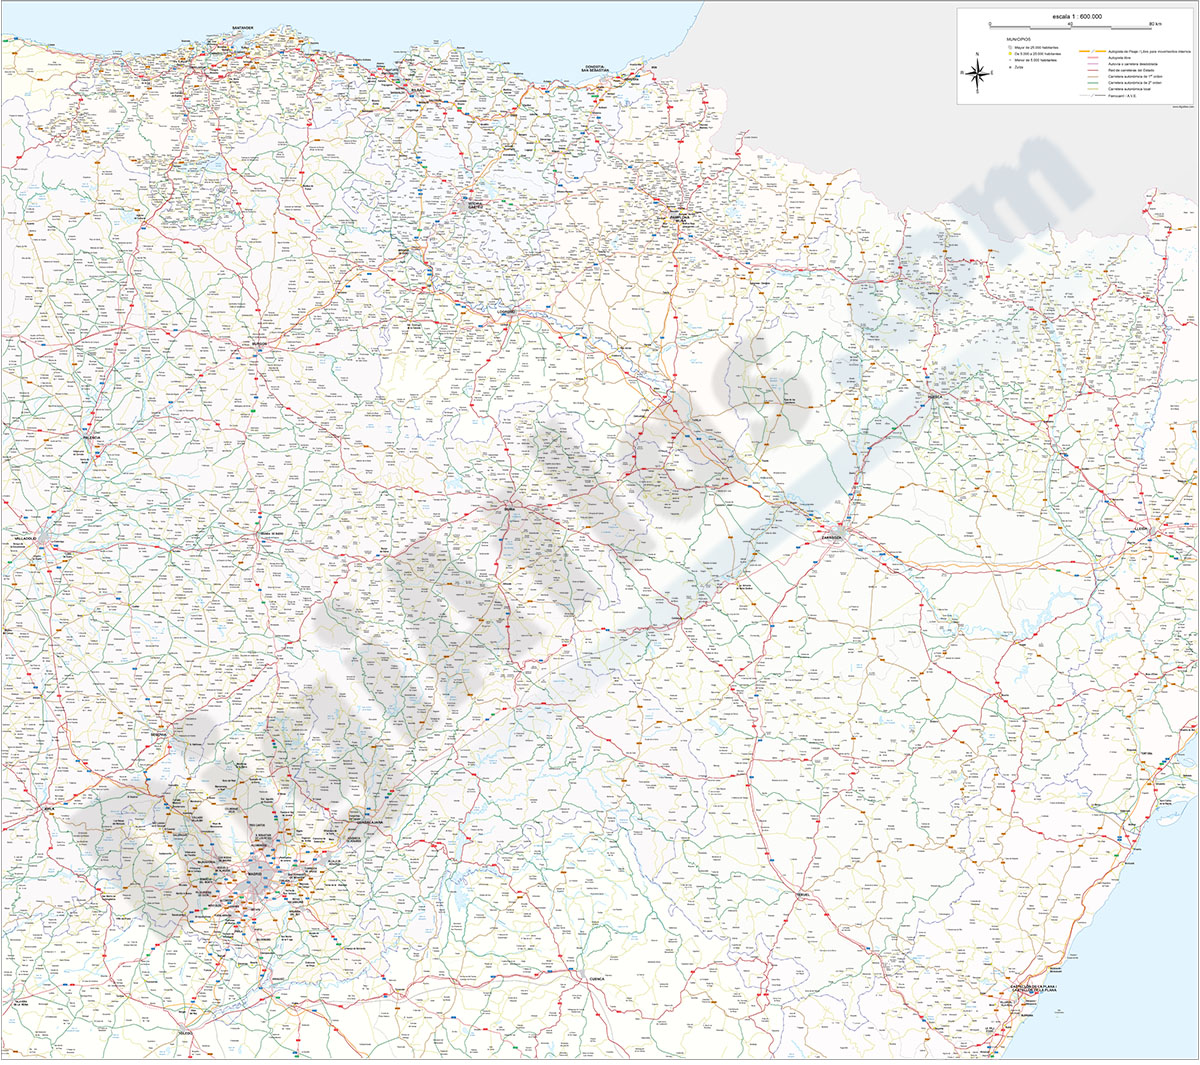 Northern roadmap of Spain